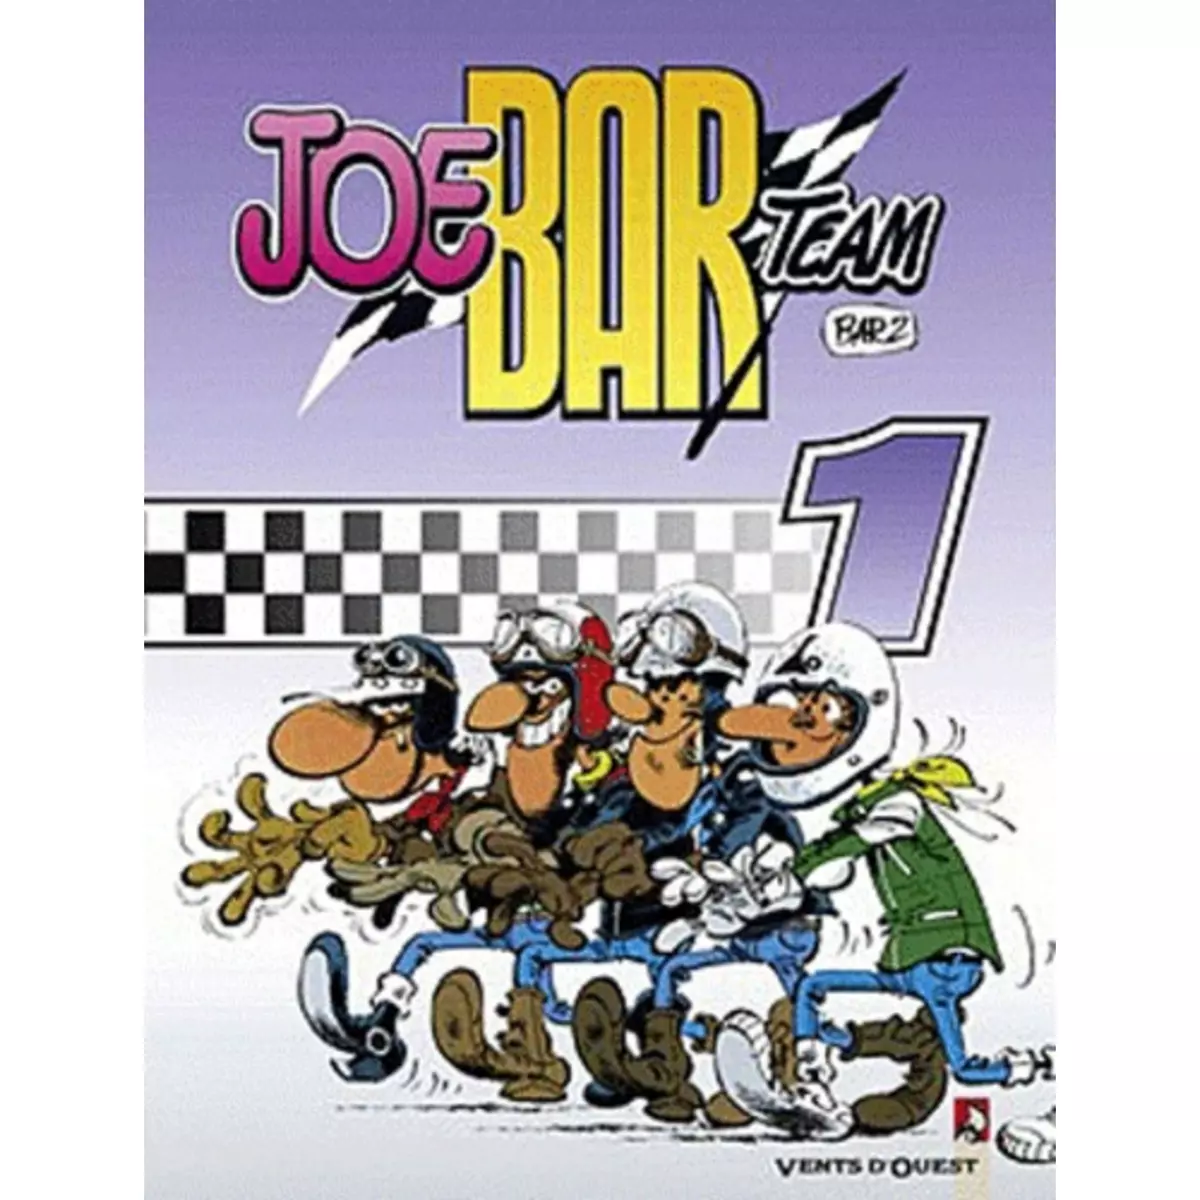  JOE BAR TEAM TOME 1, Bar2